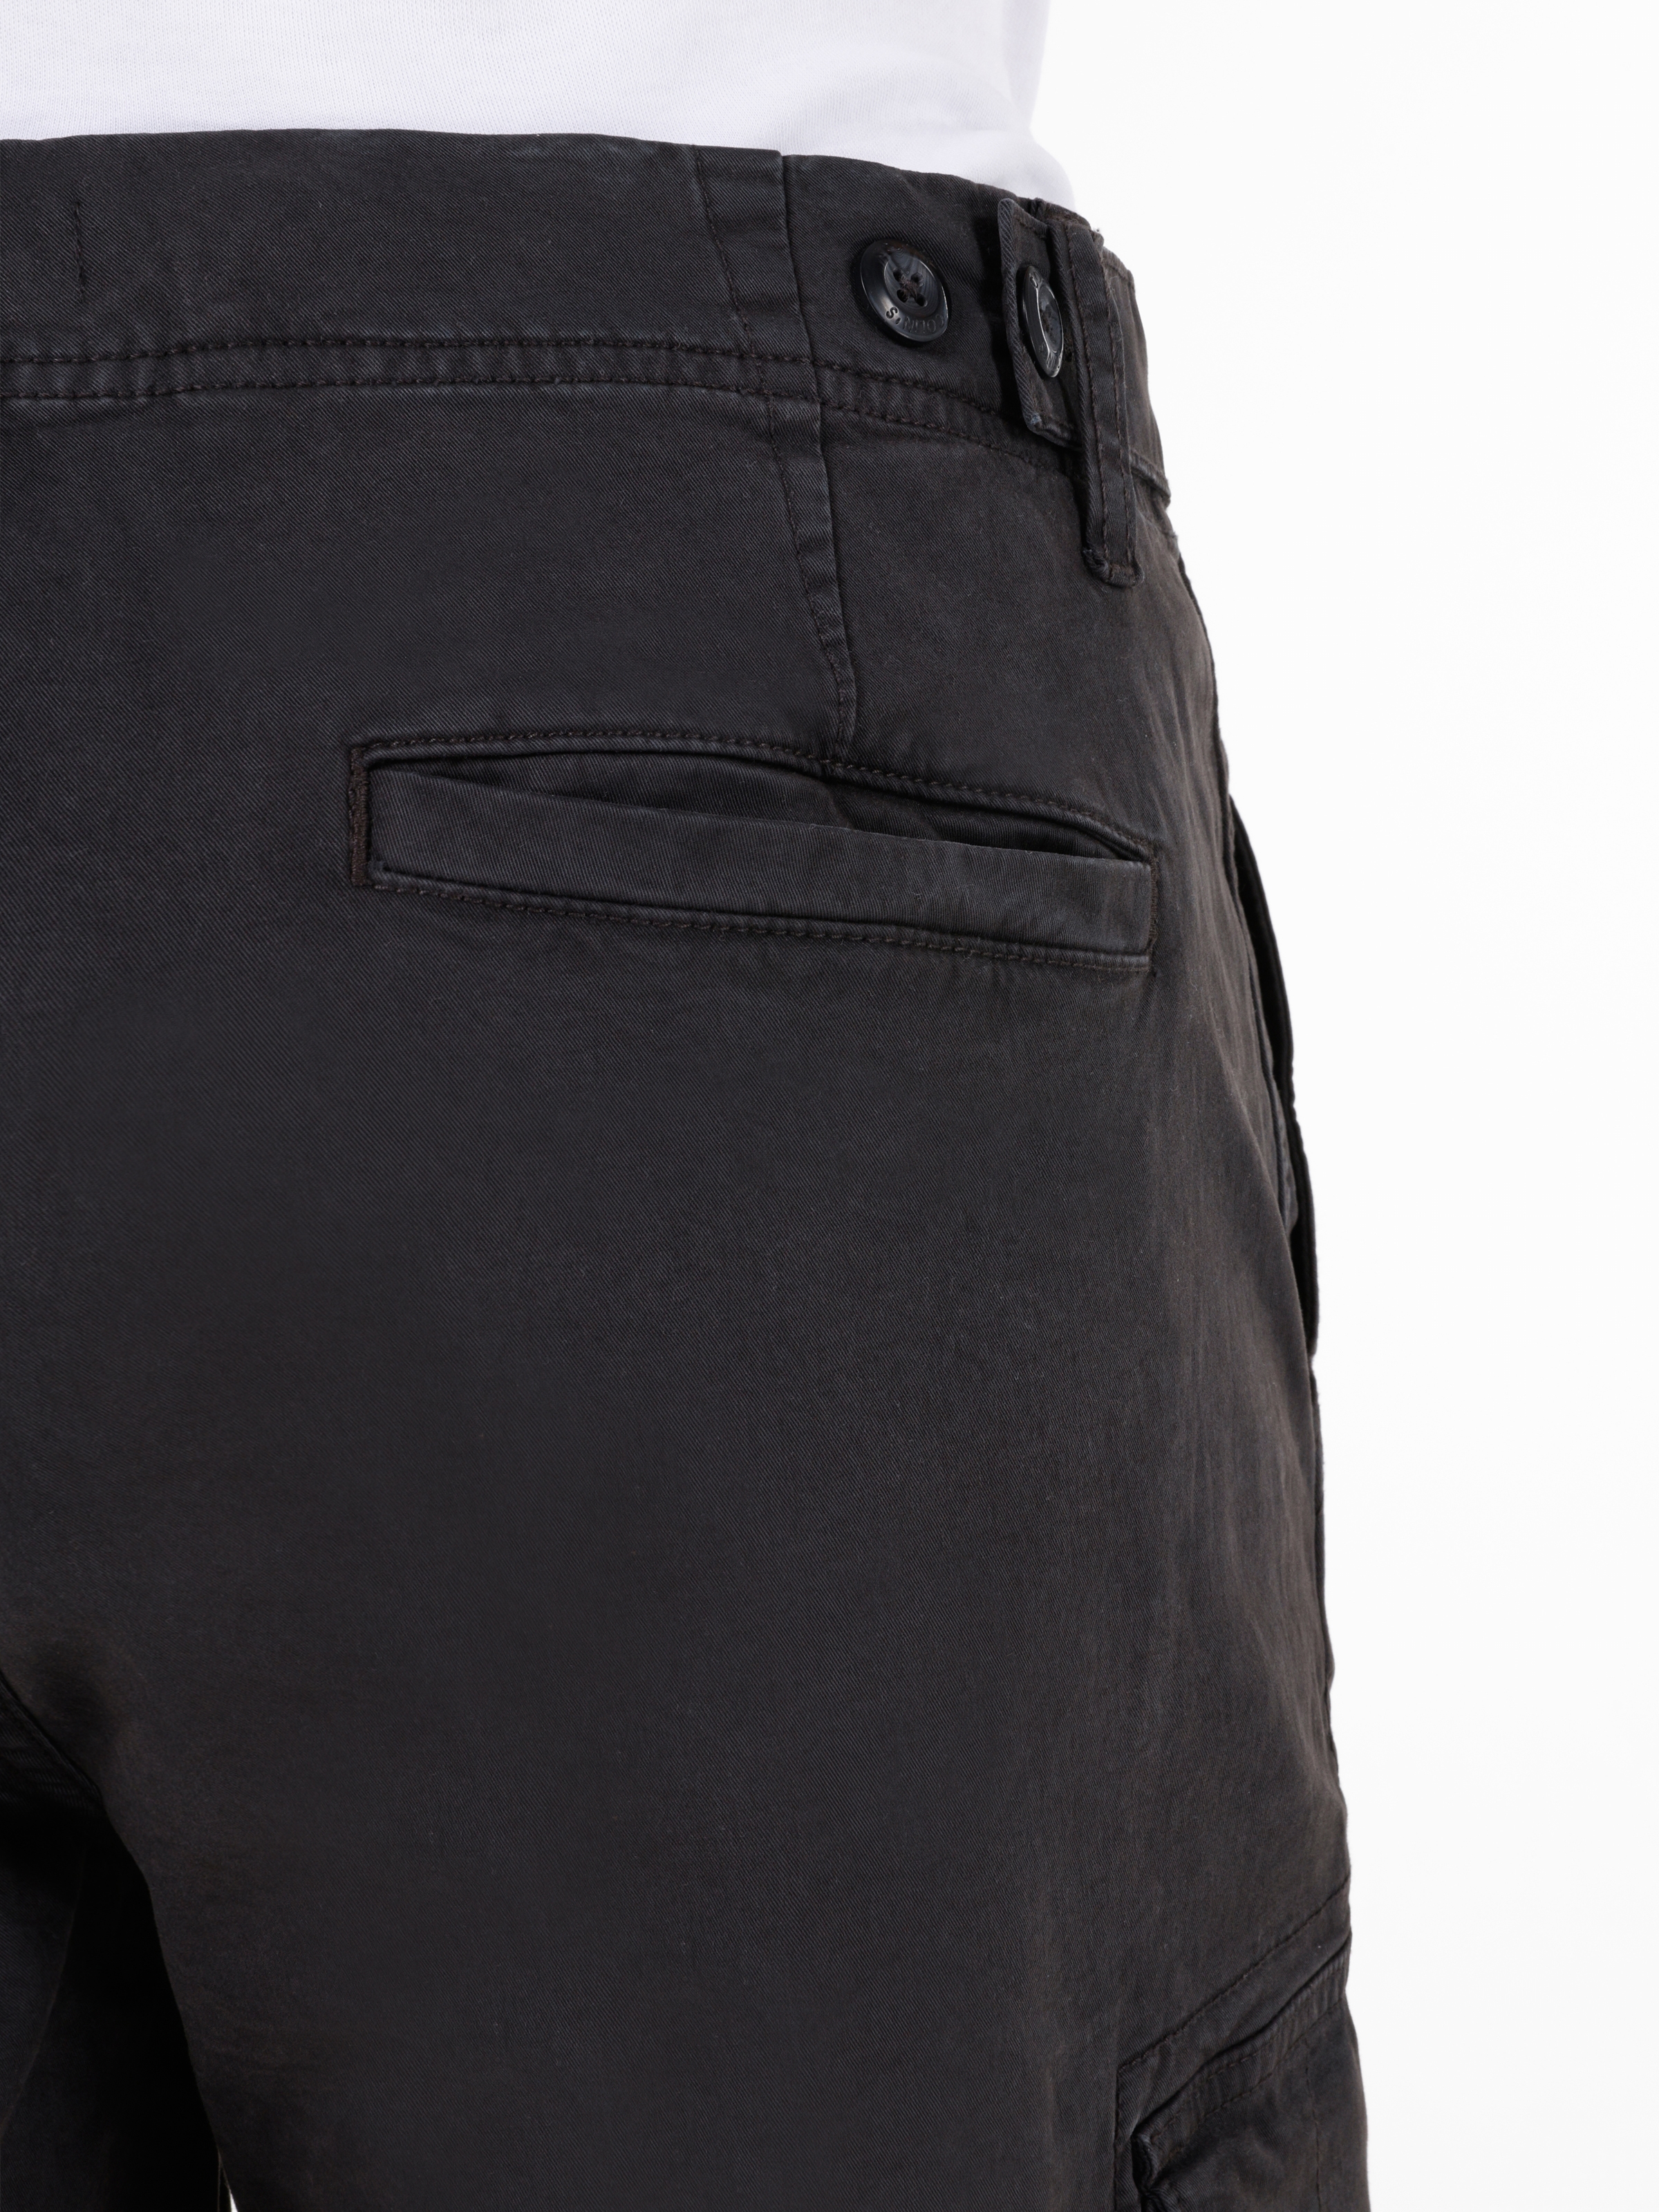 Afișați detalii pentru Short / Pantaloni Scurti De Barbati Antracit Regular Fit  